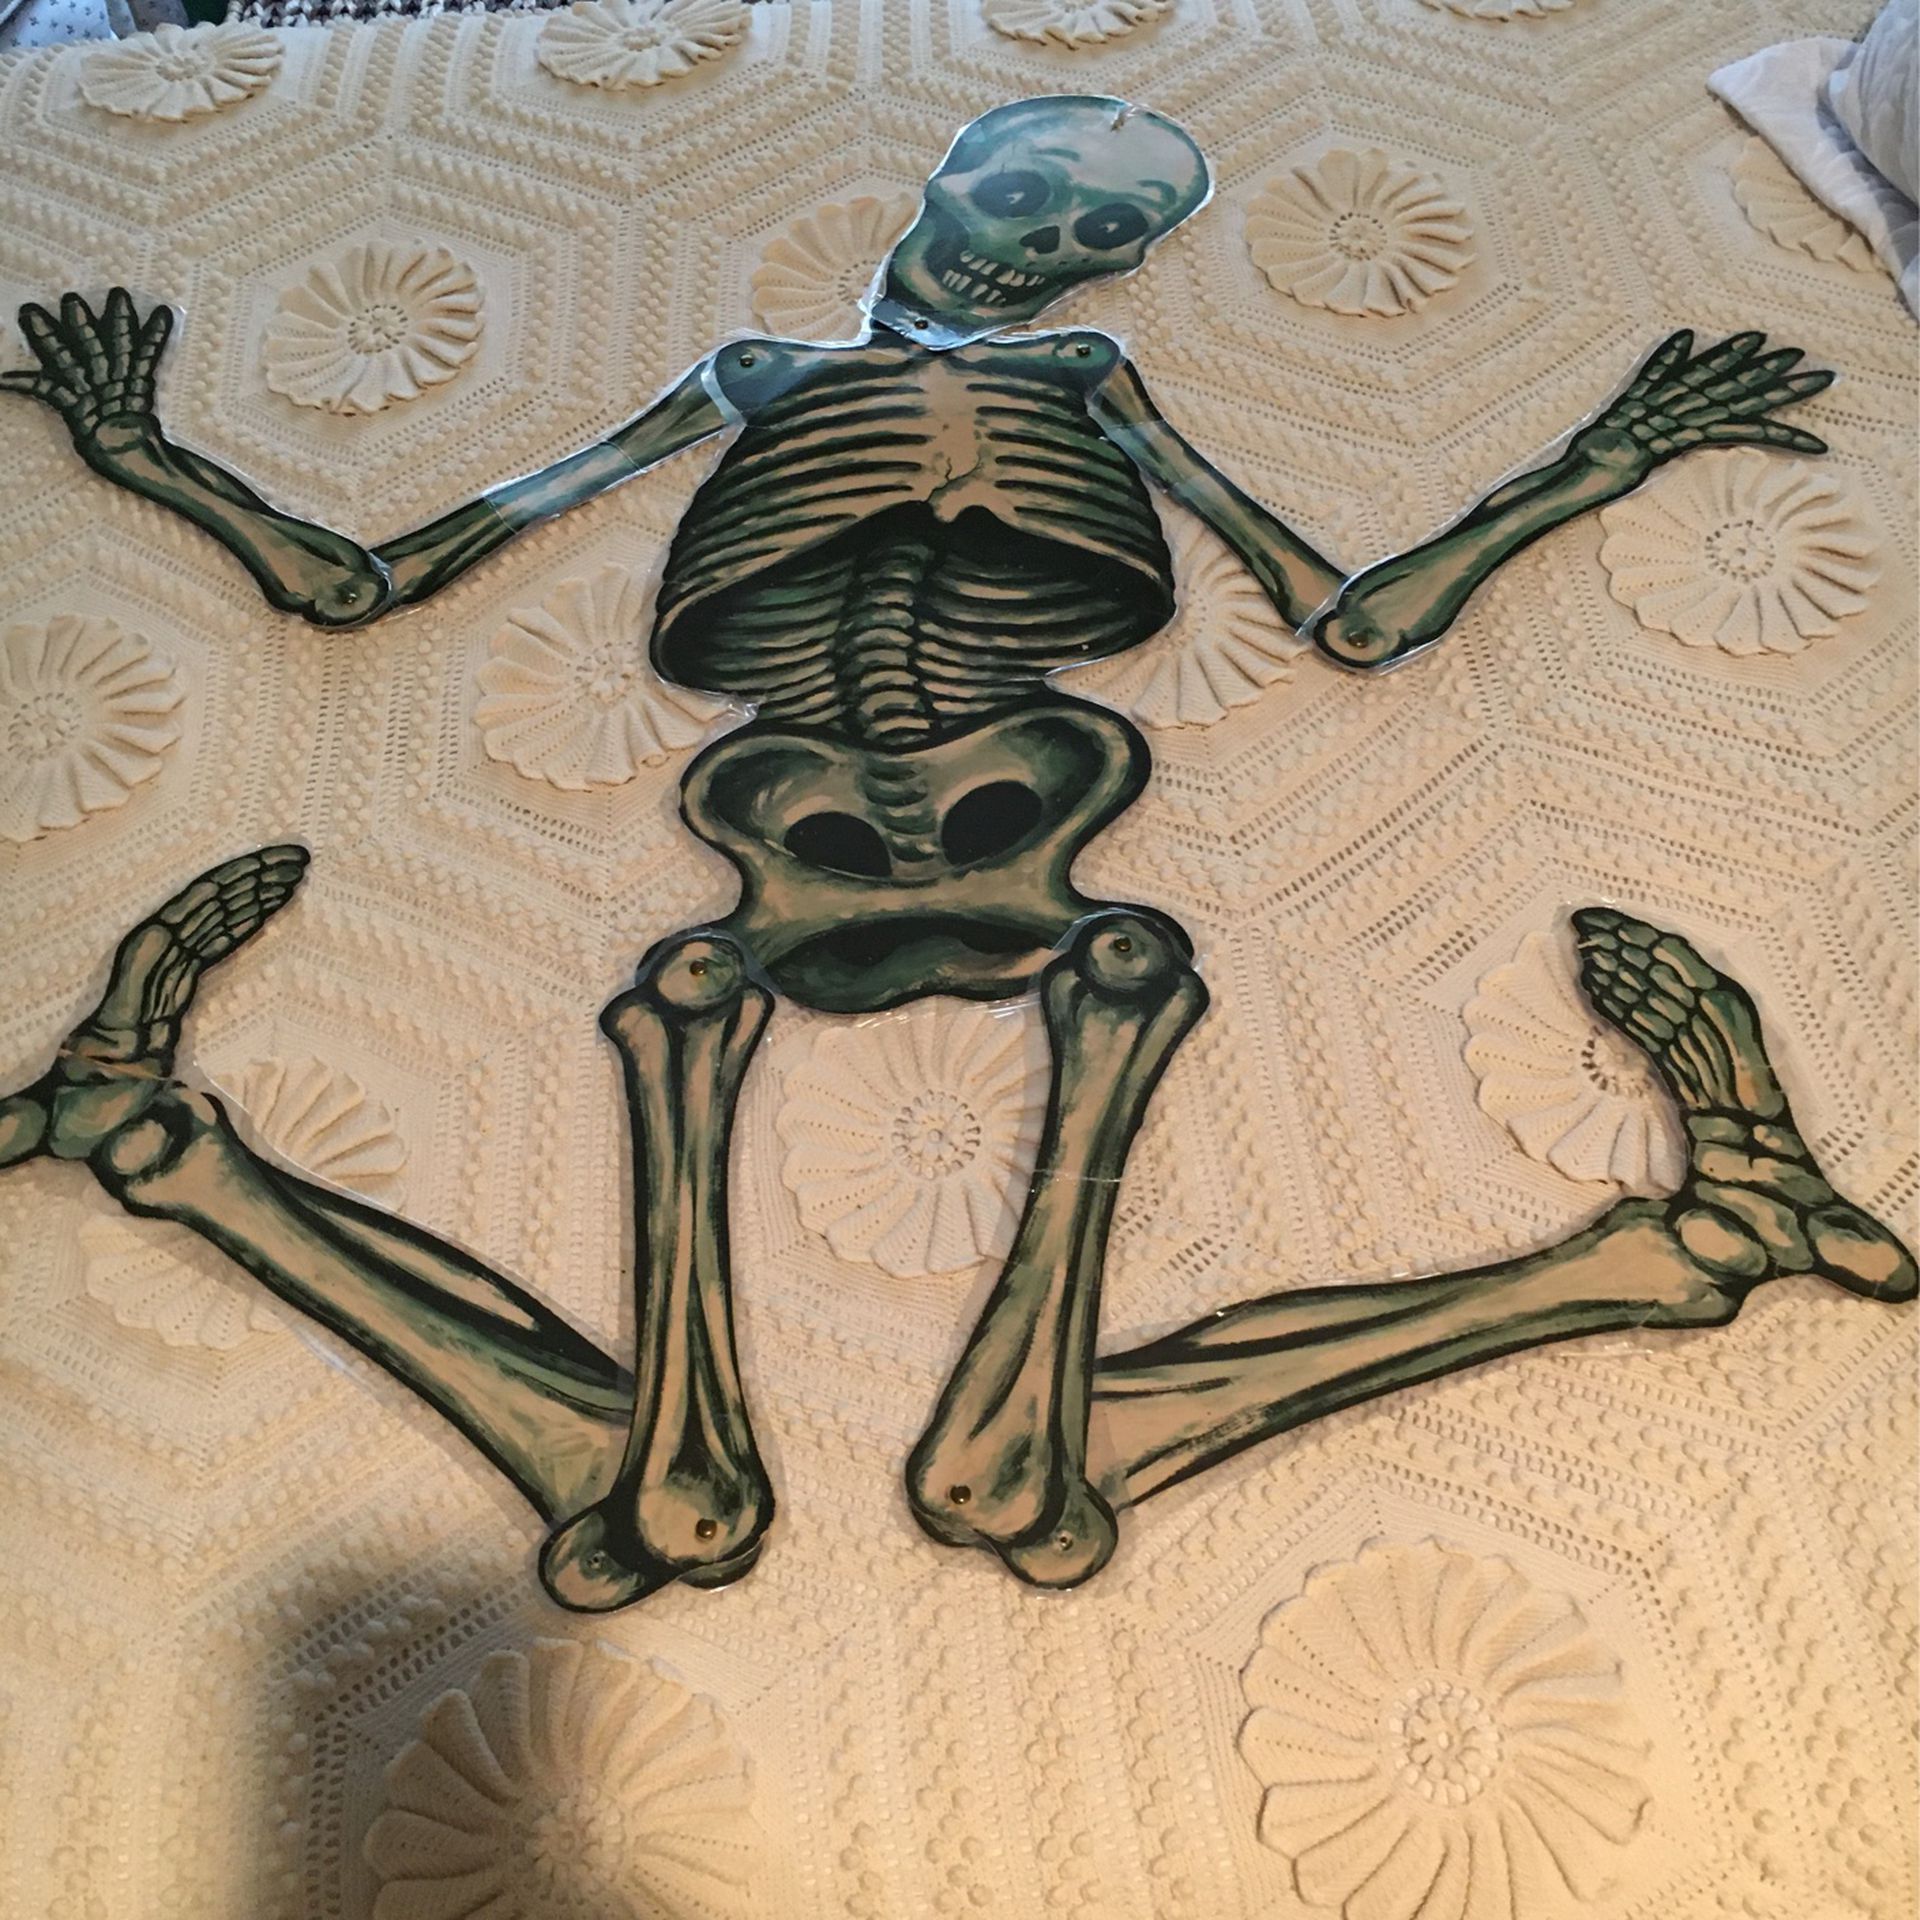 Halloween Skeleton-50s Era; Cardboard; Brads At Joints; Laminated